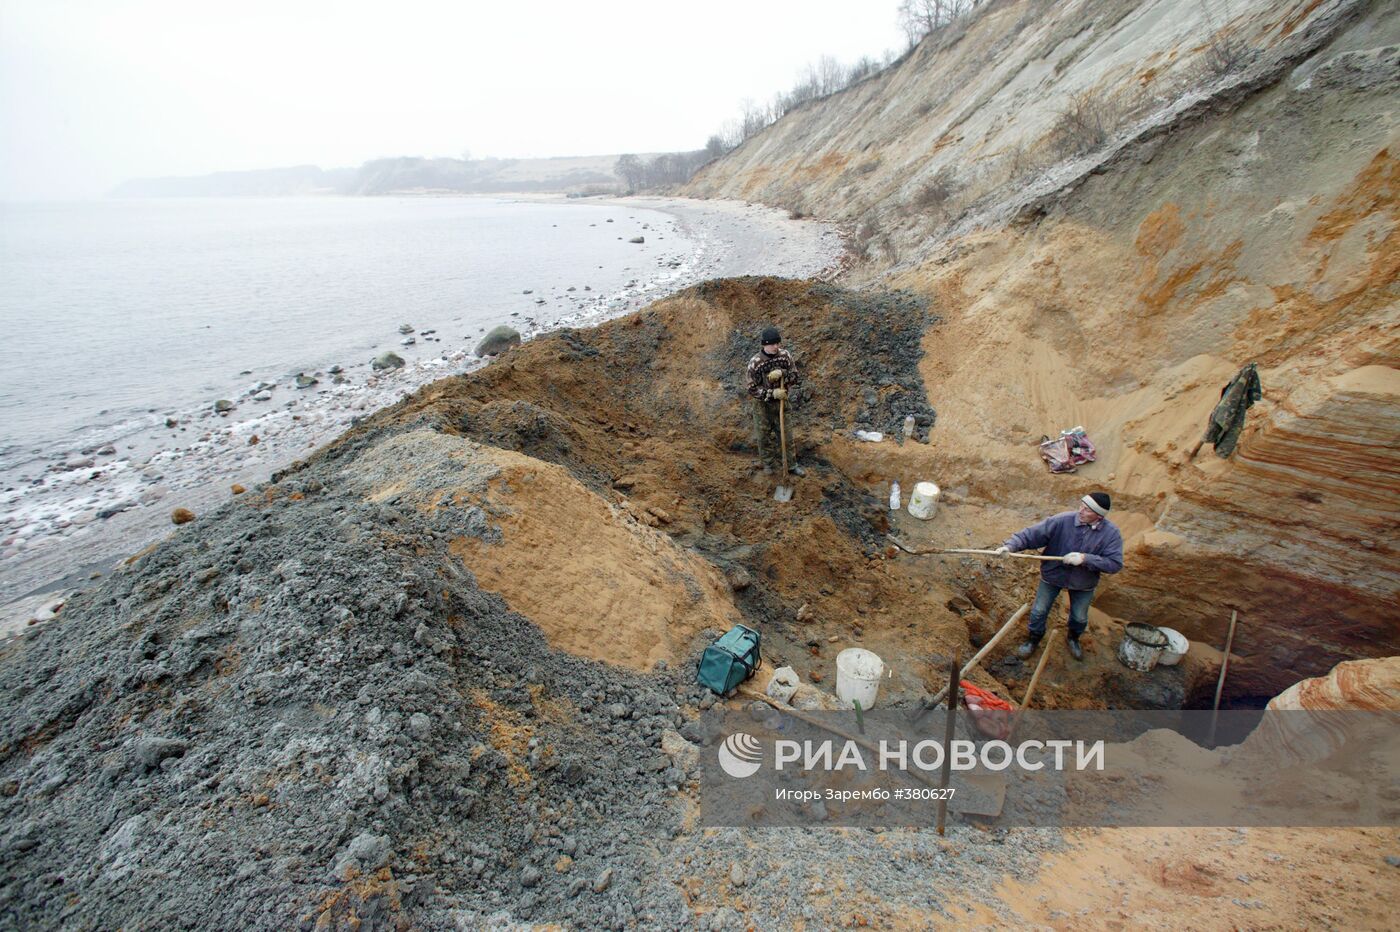 Добыча янтаря в береговой зоне Балтийского моря